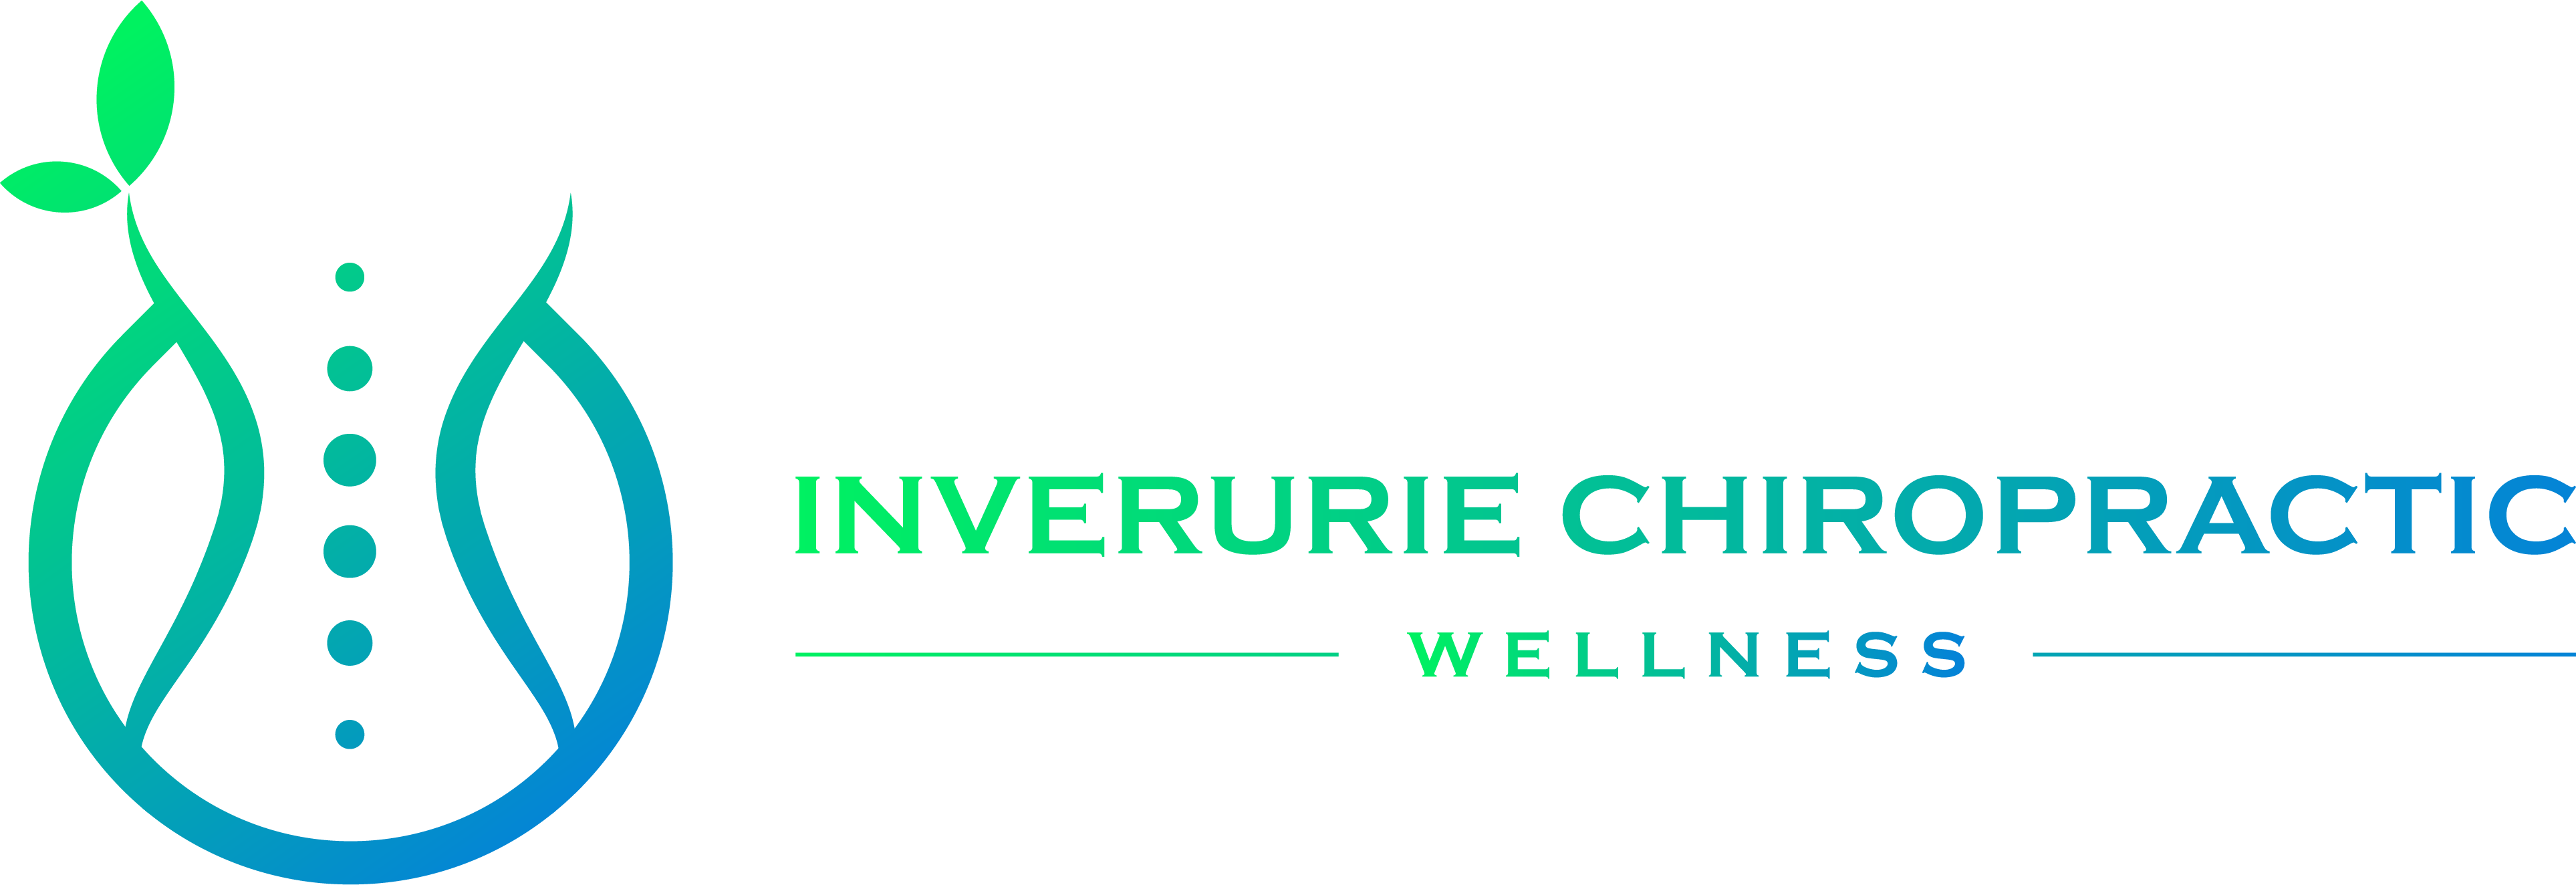 Inverurie Chiropractic - Wellness